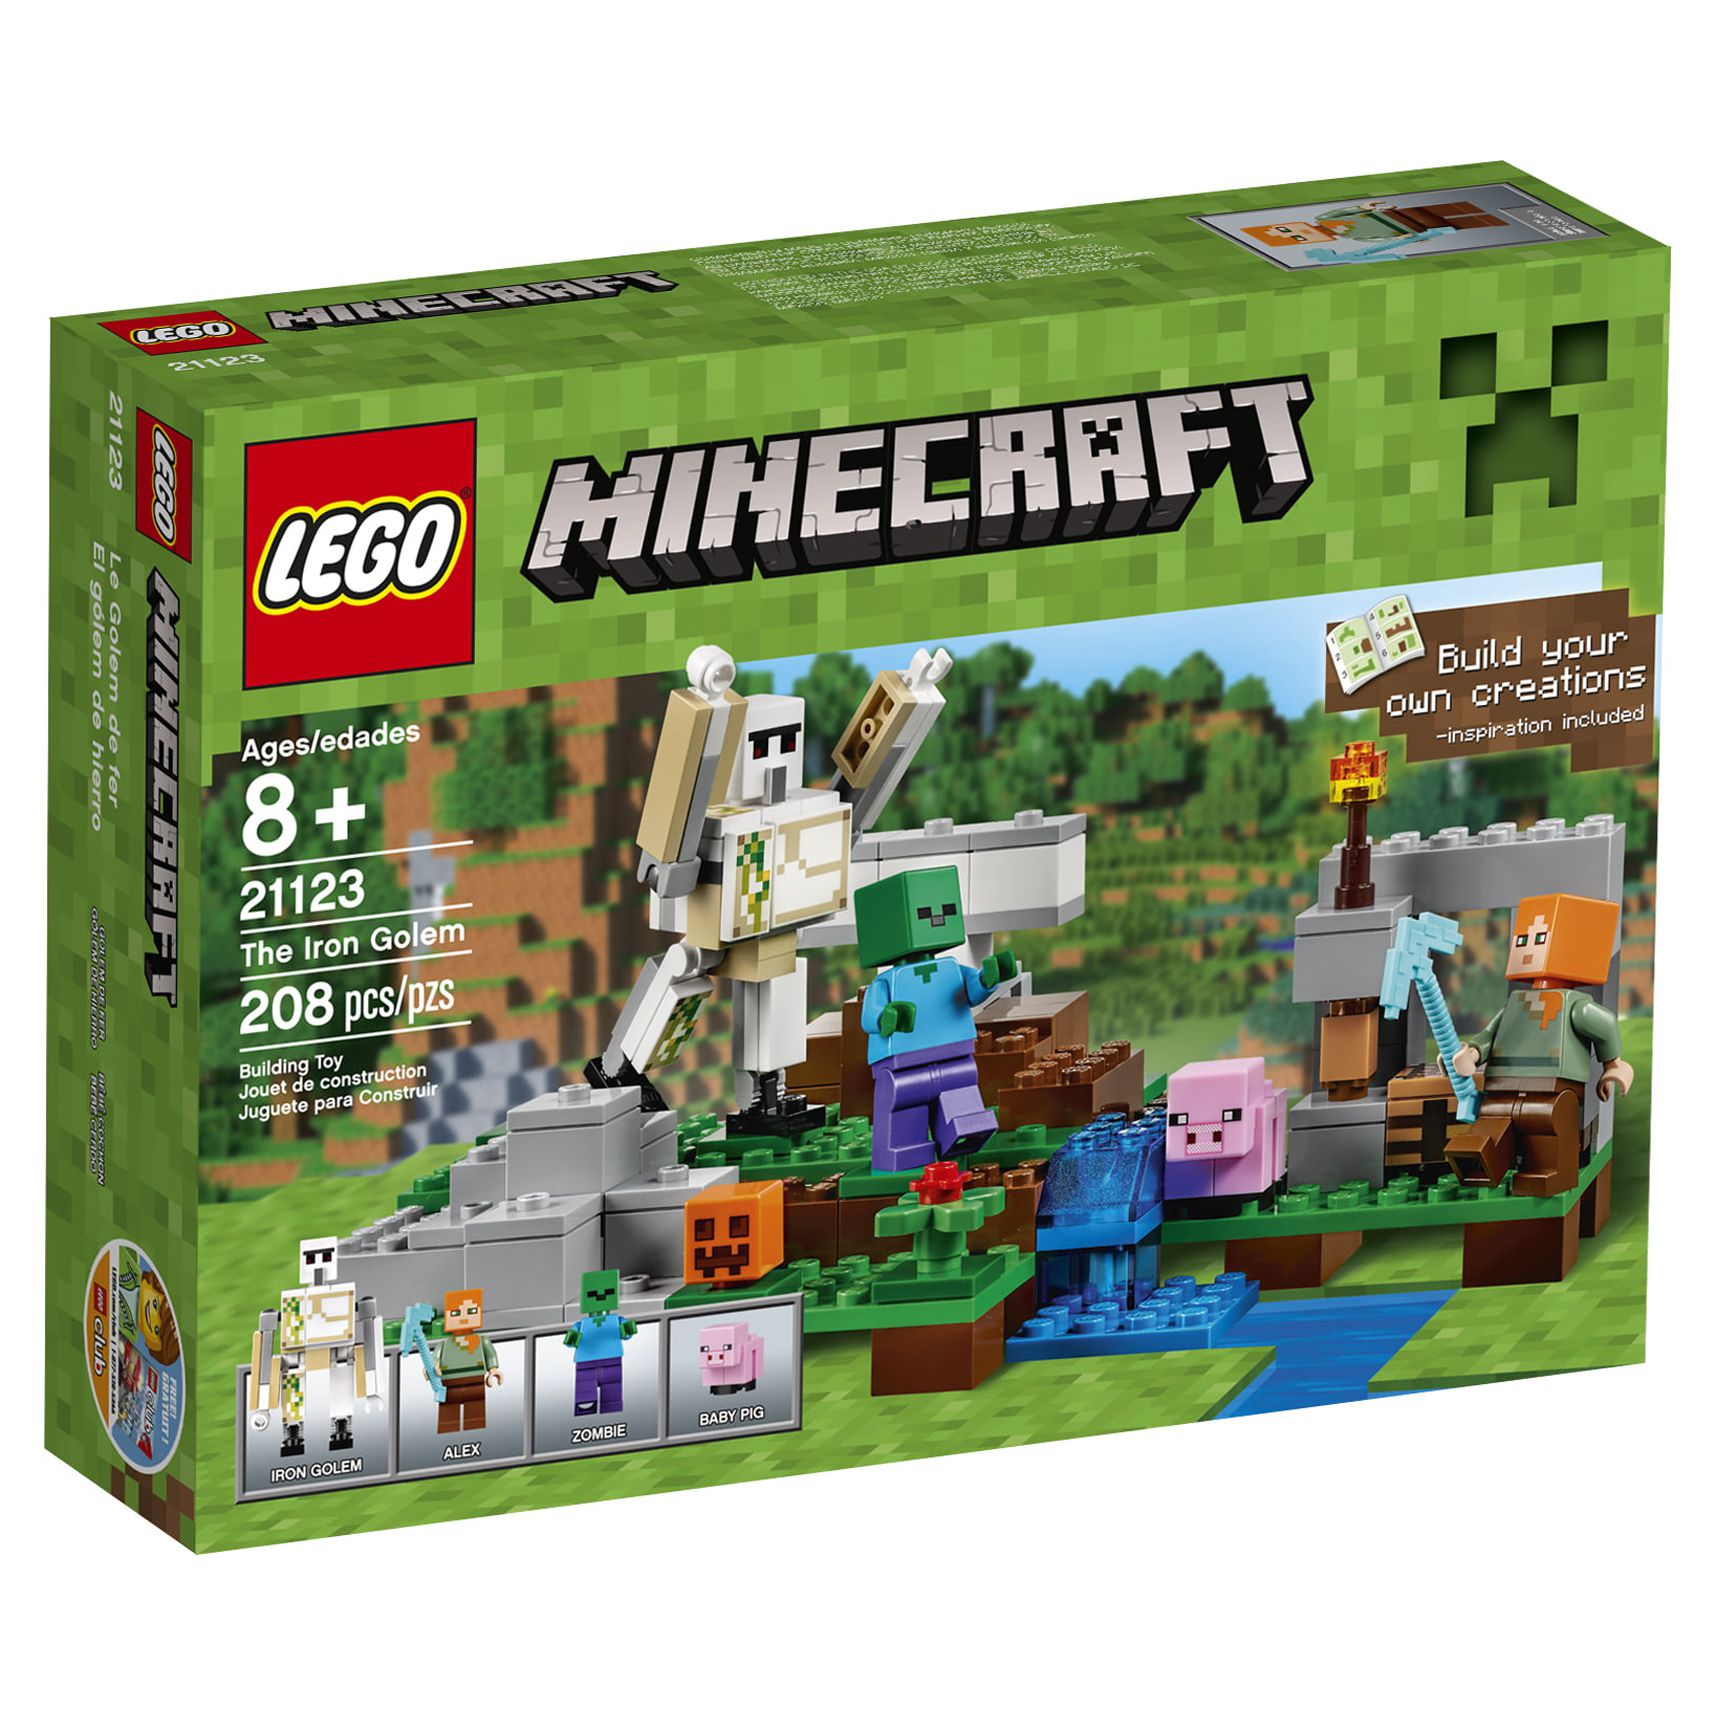 Lego Minecraft The Iron Golem, 21123 - image 3 of 4